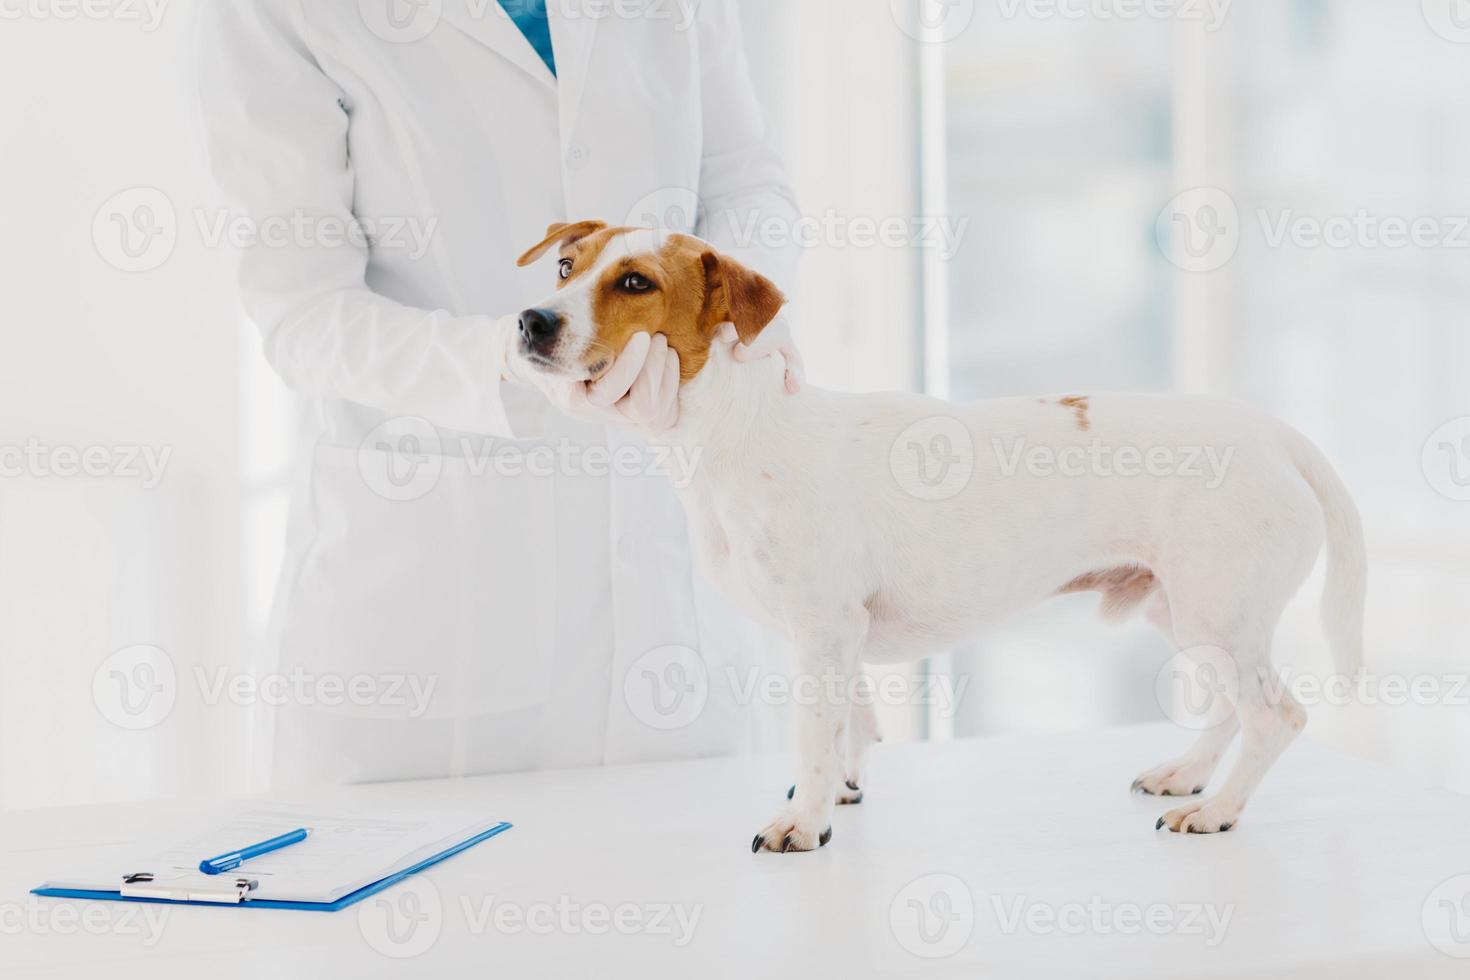 veterinário desconhecido em vestido branco e luvas examina o cão jack russell terrier no local de trabalho, anota a prescrição na prancheta, trabalha em clínica privada. animal doméstico vem na consulta médica foto